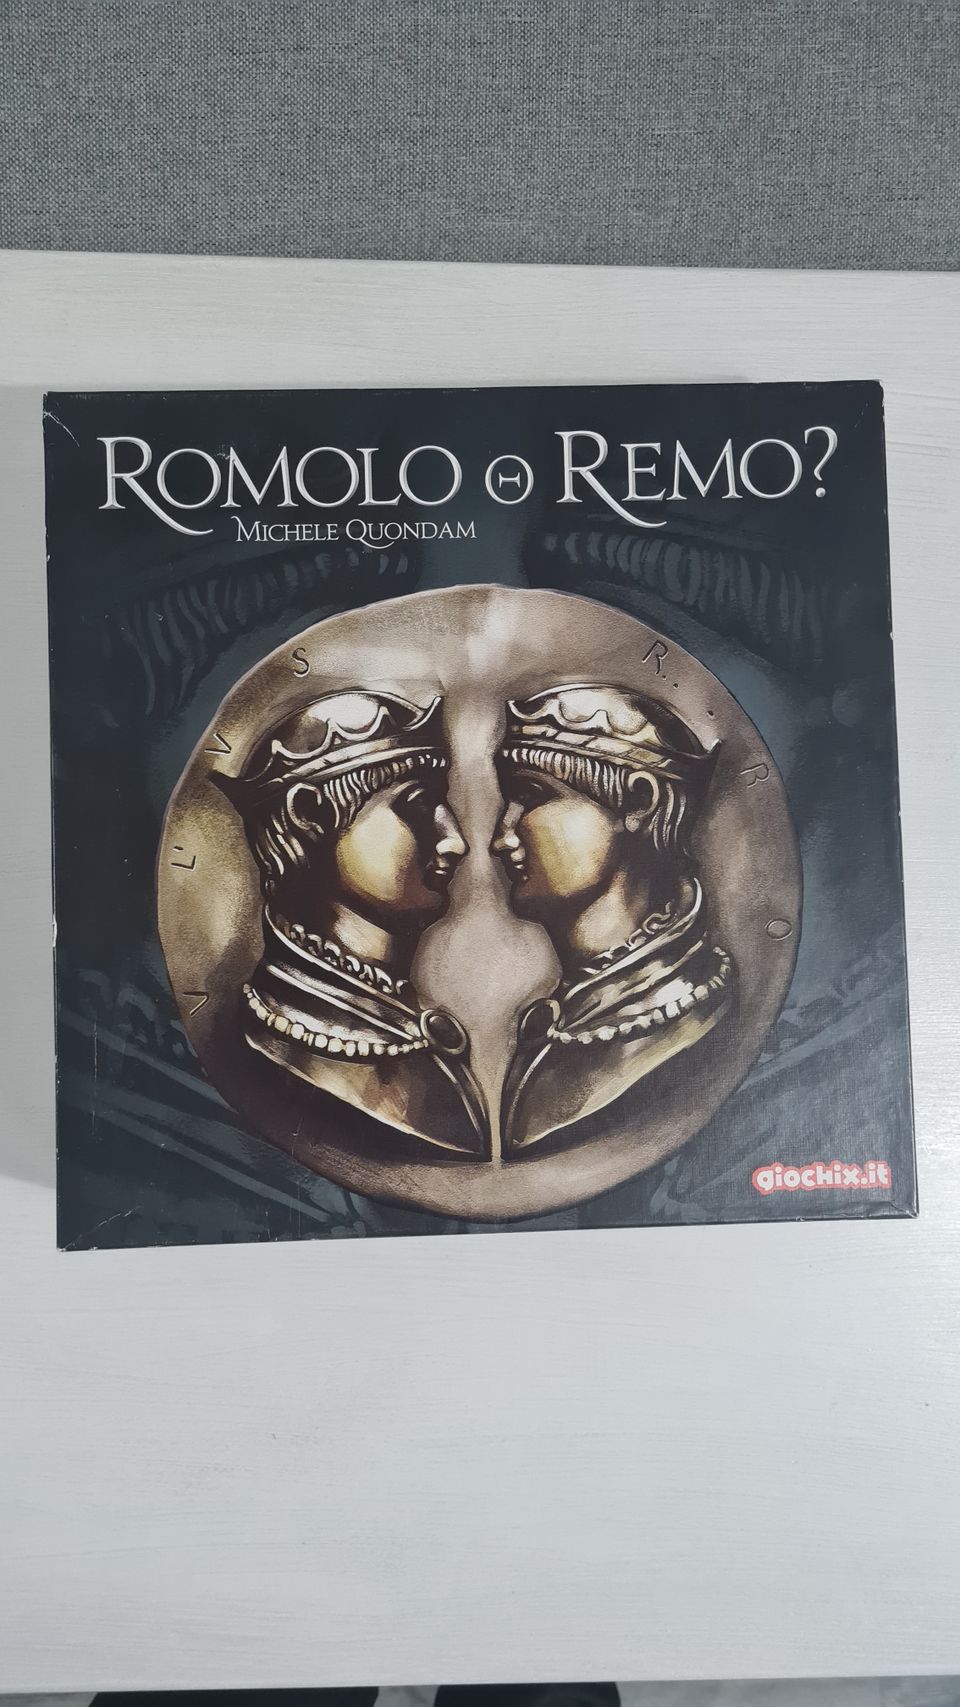 Romolo o Remo? - Lautapeli